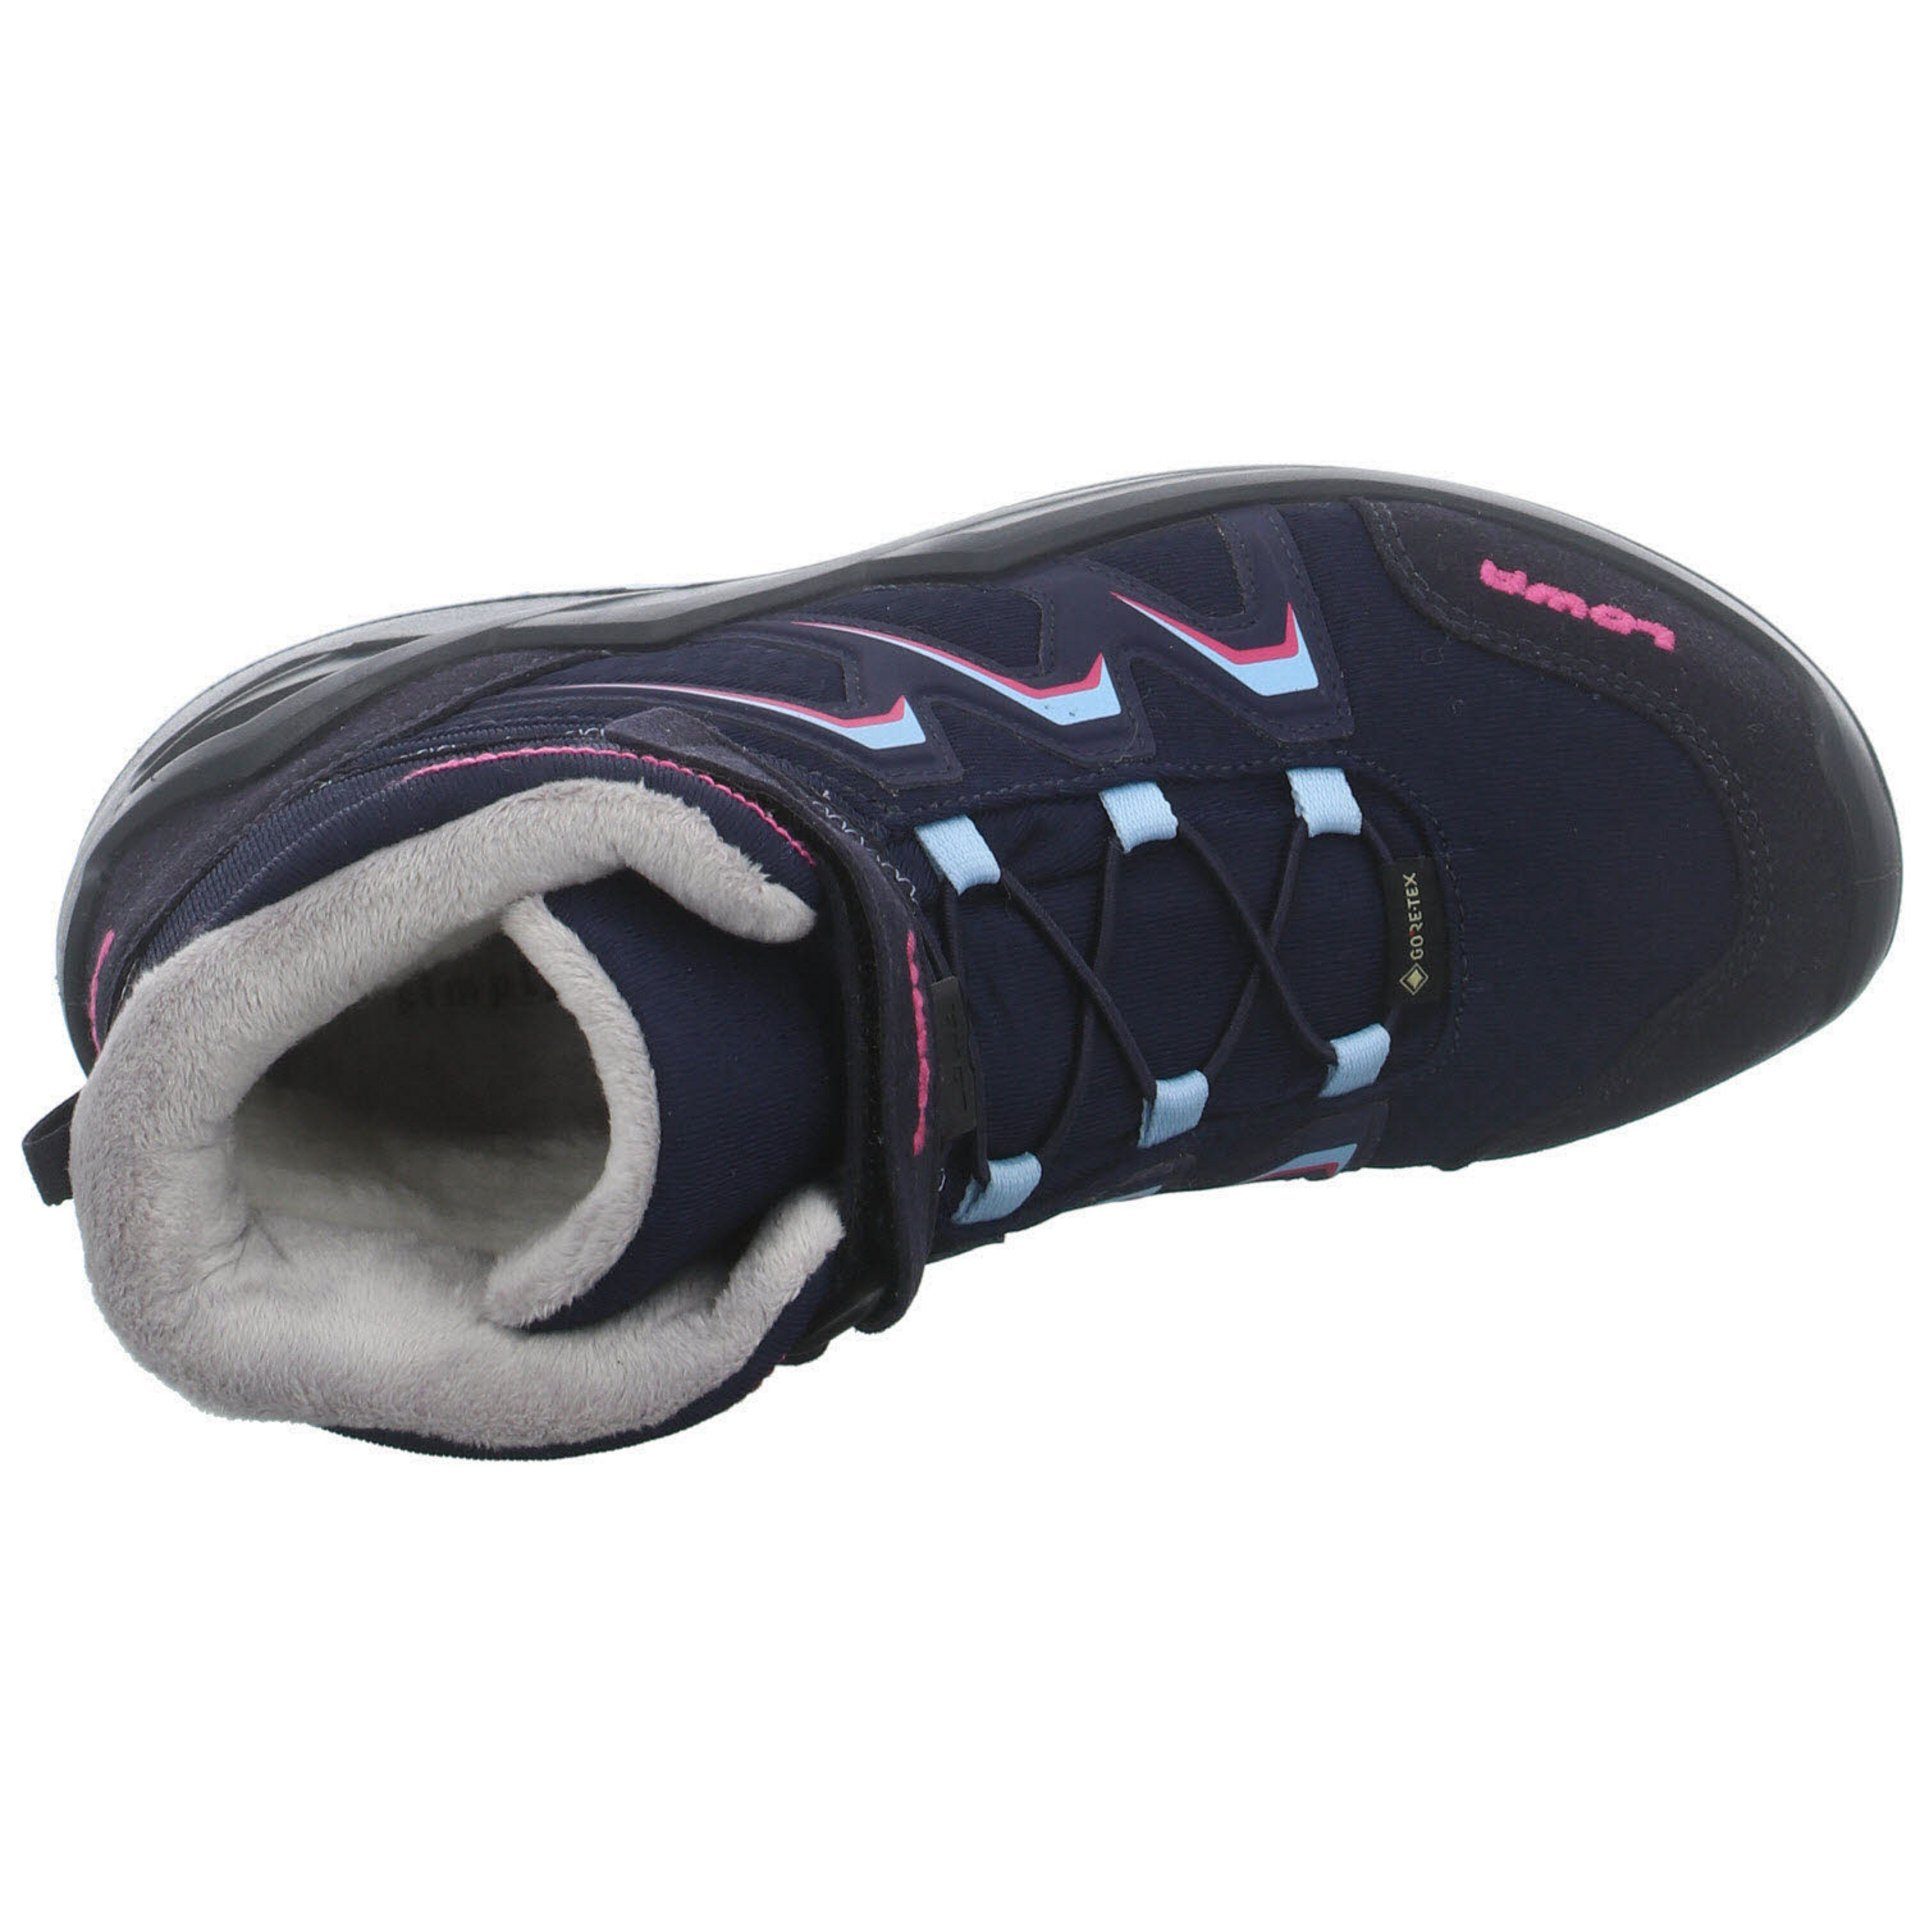 GTX Maddox Warm Jungen Lowa Boots Textil Stiefel Stiefel Schuhe NAVY/BEERE